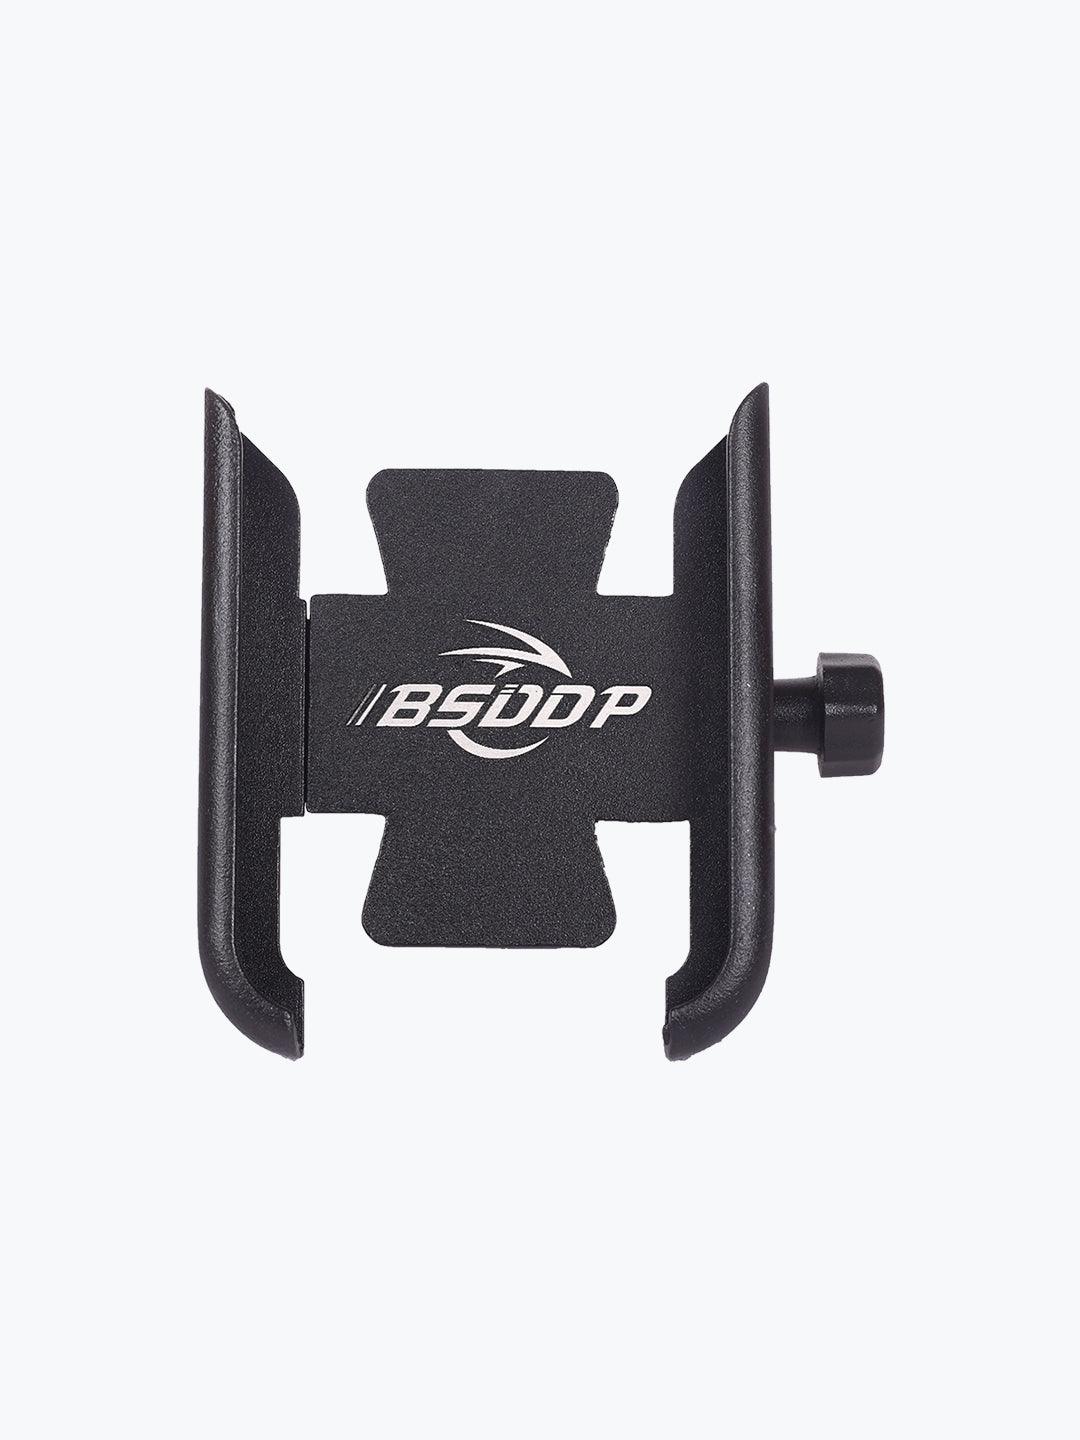 BSDDP Metal Handle Mount Holder G0122 Black - Moto Modz